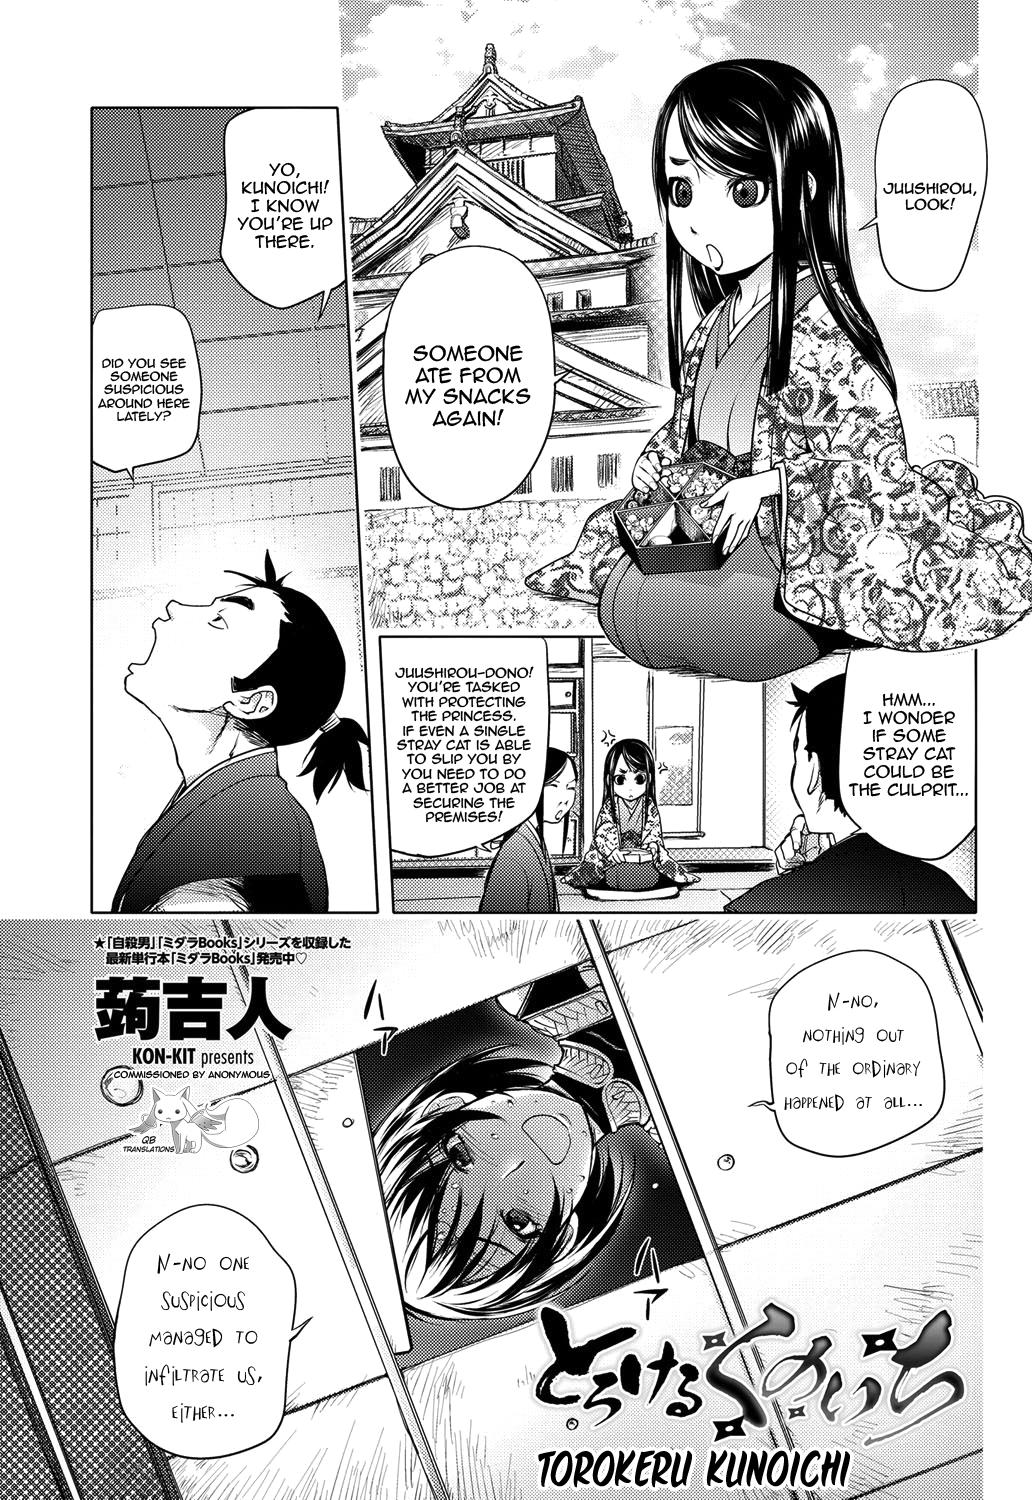 Torokeru Kunoichi NTR Story + Prequel 1